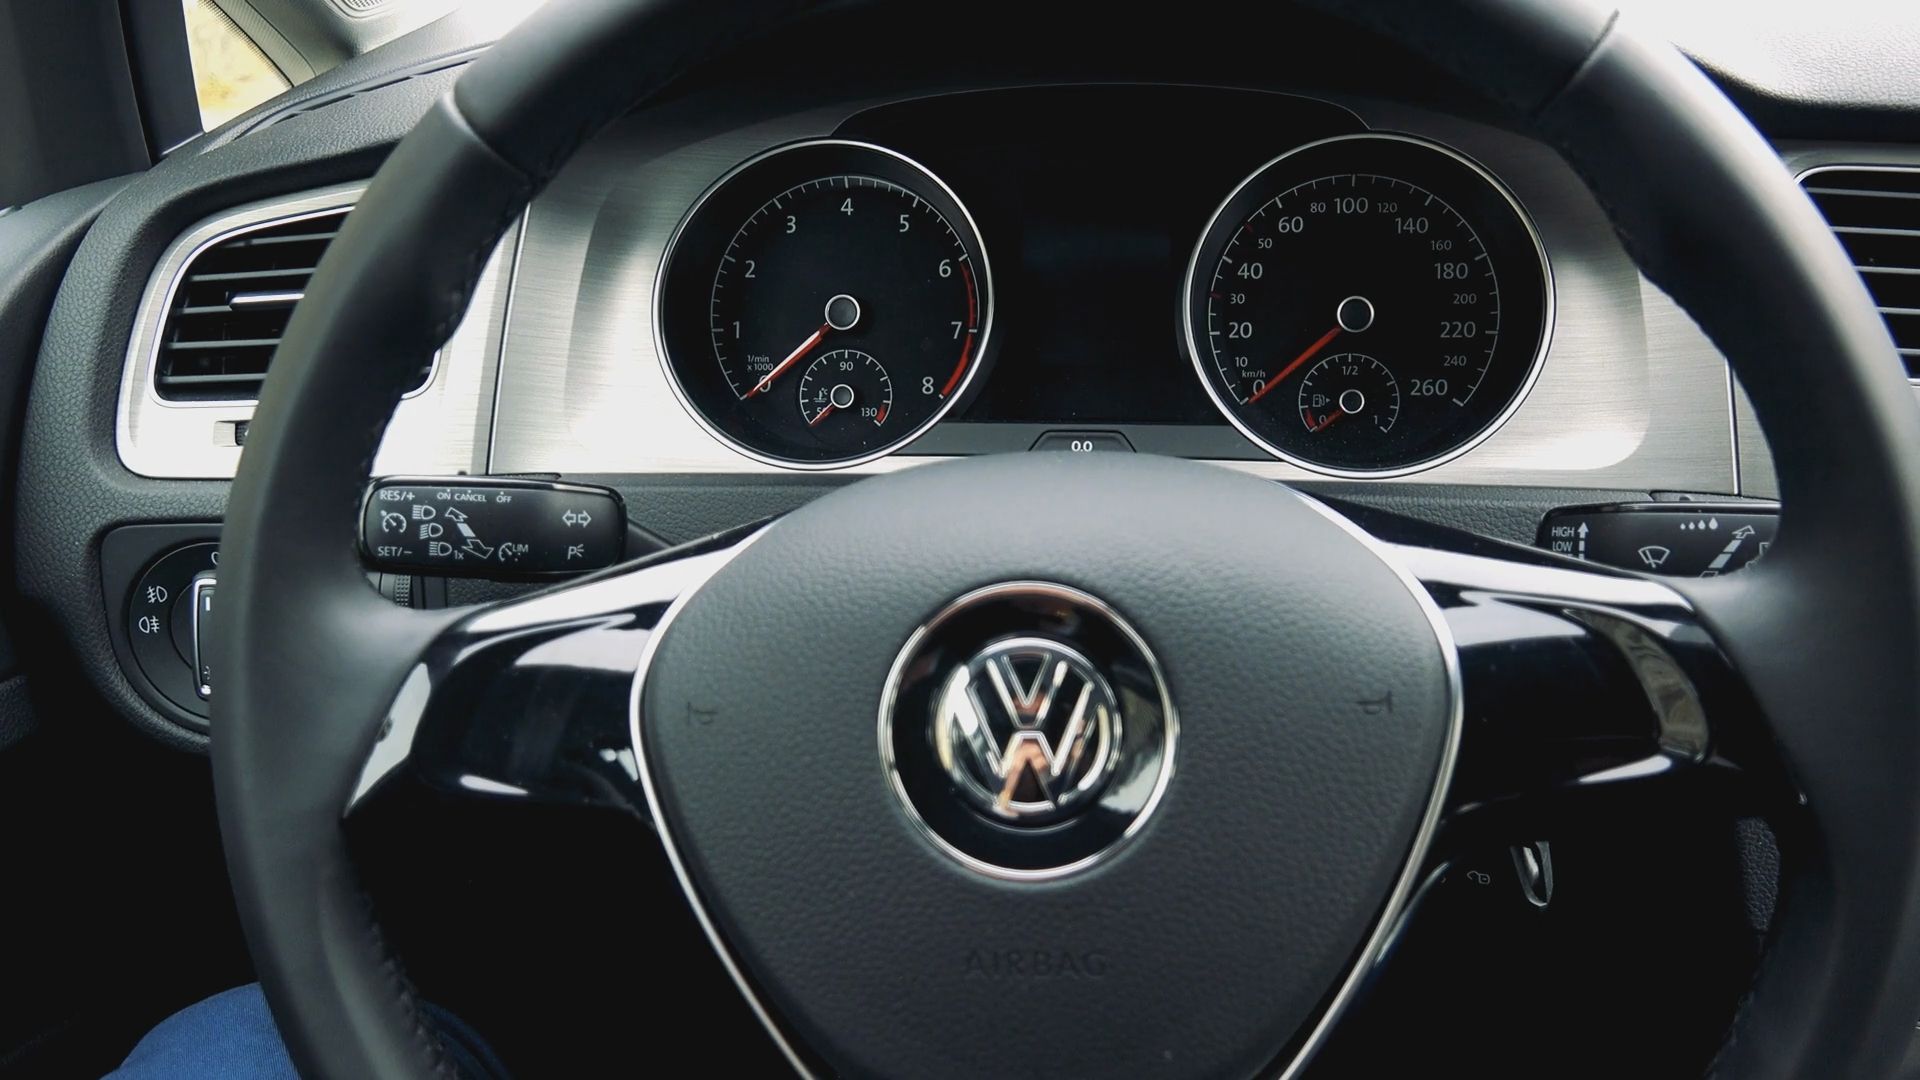 VW muss tausende Autos zurückrufen: Beliebte Baureihen betroffen – Fahrer drohen große Probleme